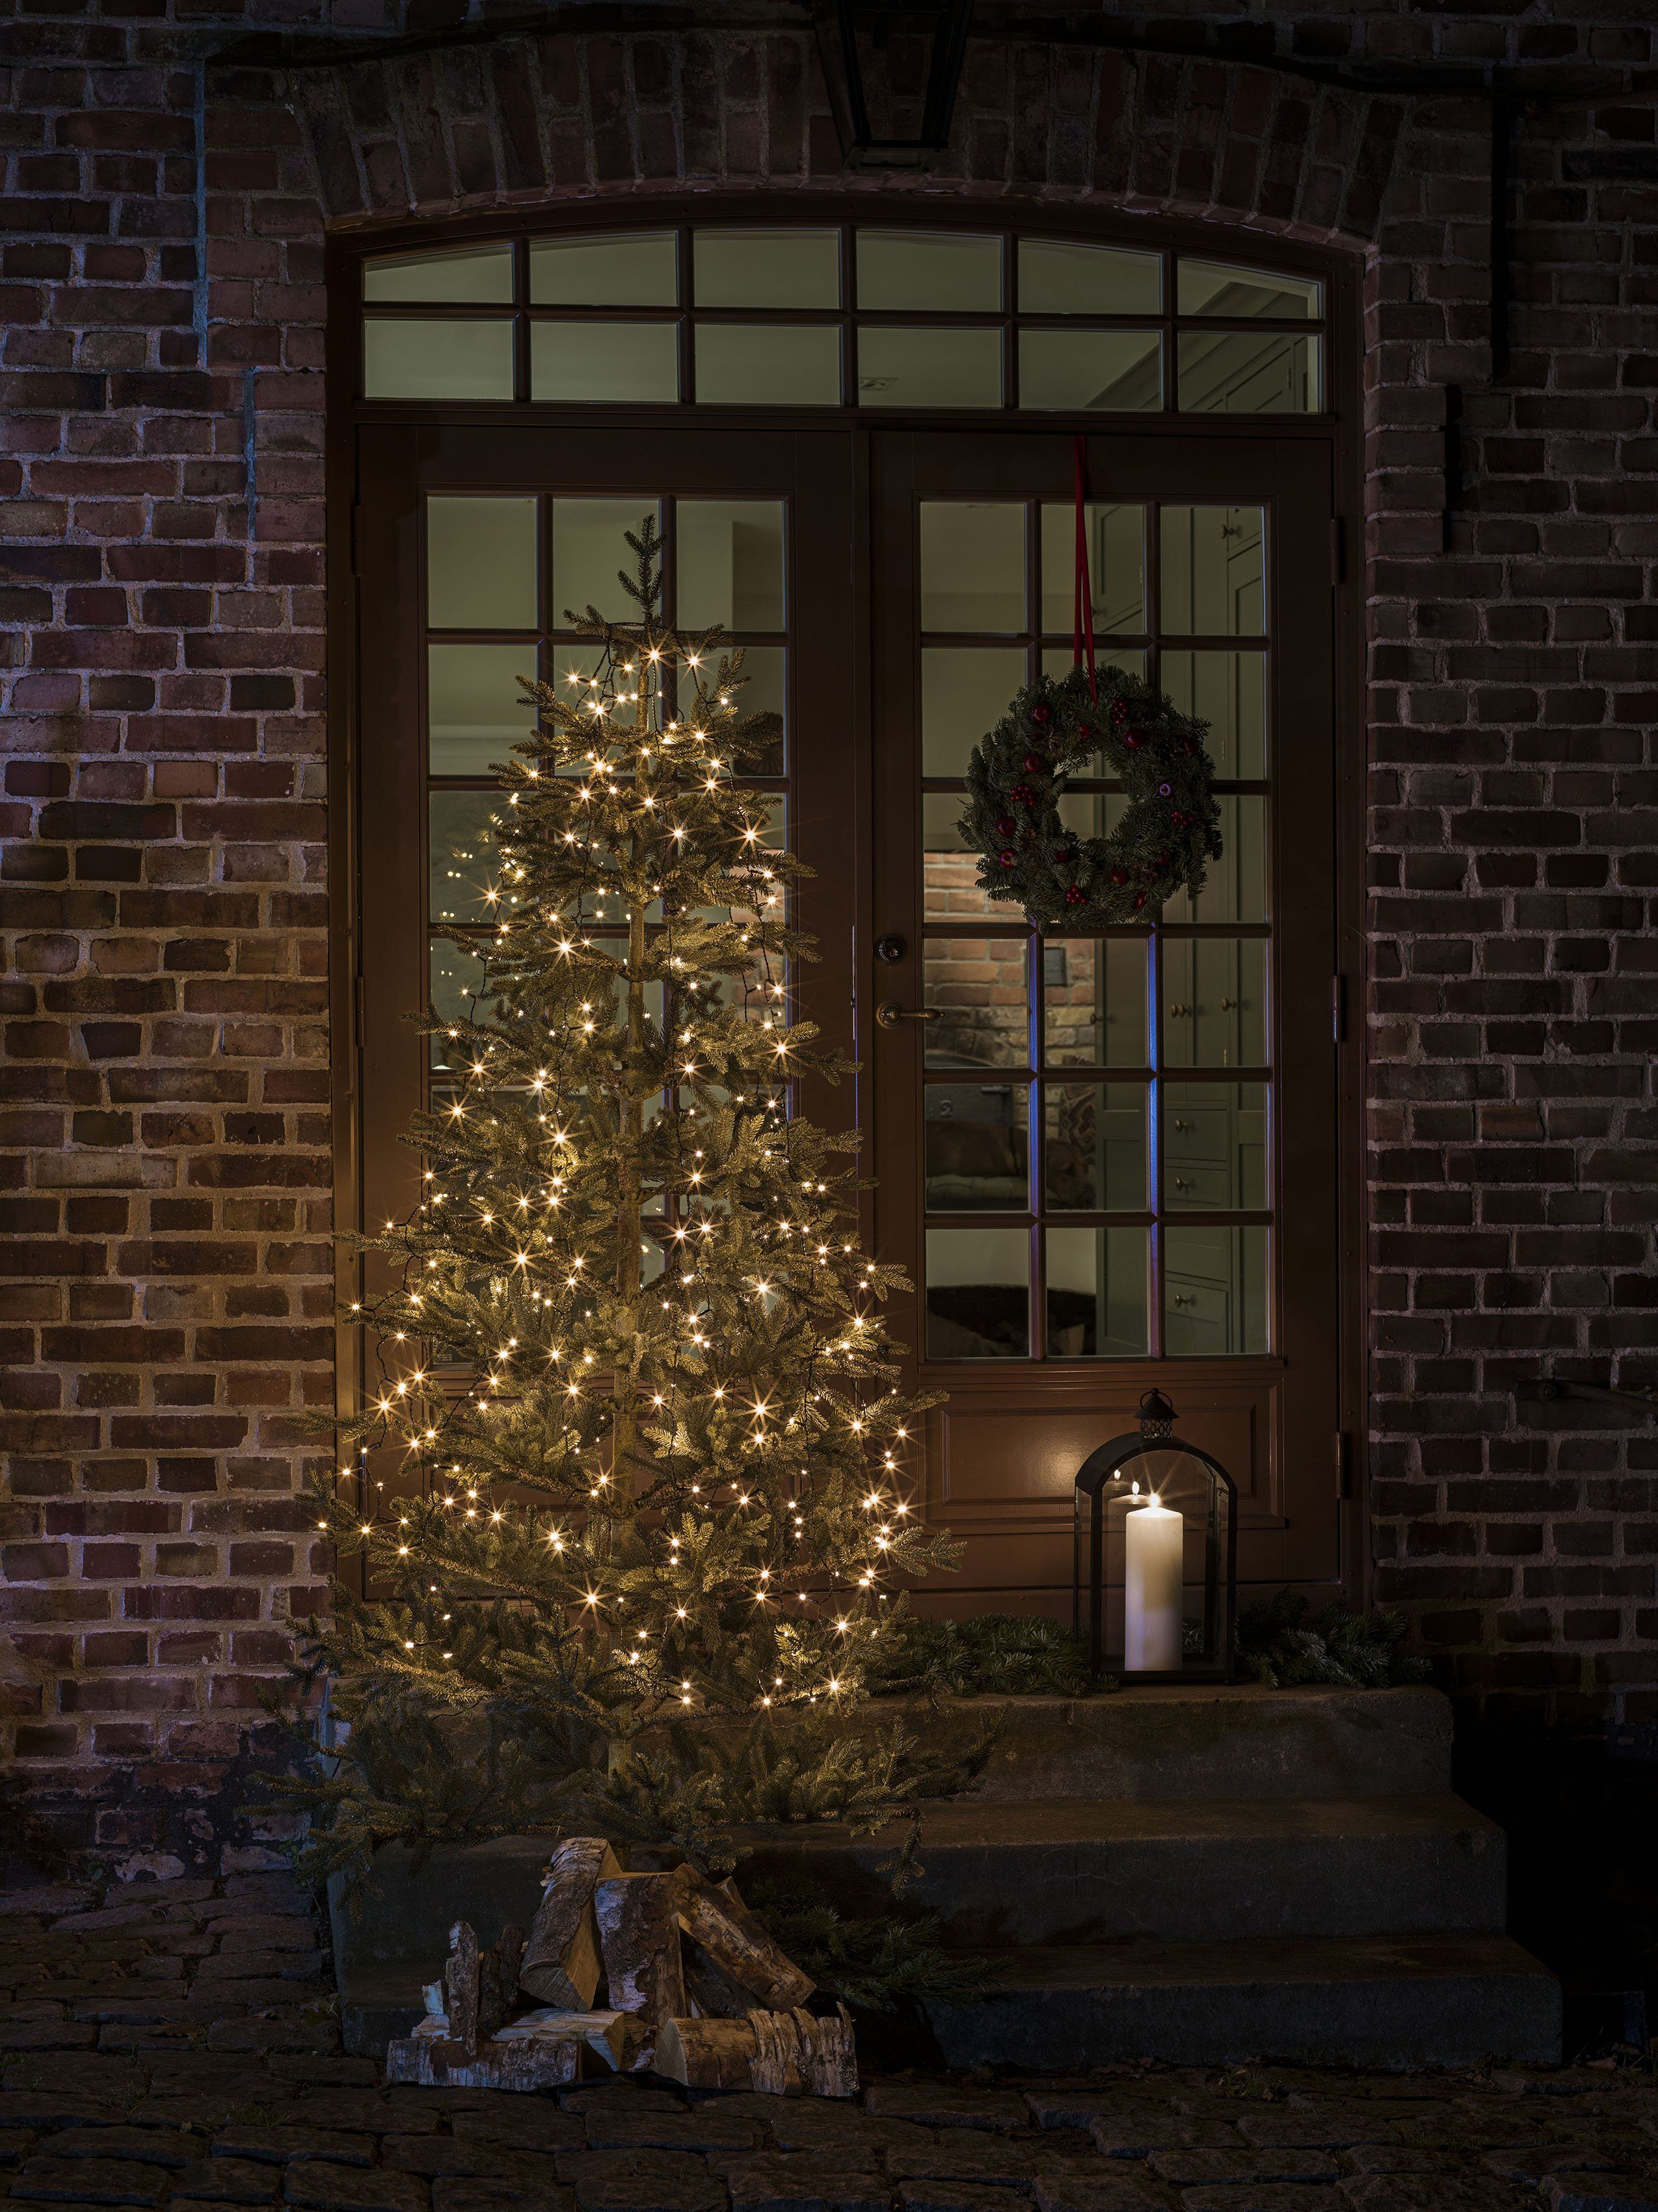 KONSTSMIDE Led-boomverlichting Kerstversiering buiten, kerstversiering Ledlichtsnoer 6 strengen à 45 frozen warmwitte dioden, strengverdubbeling van 6 naar 12 strengen naar 120 cm